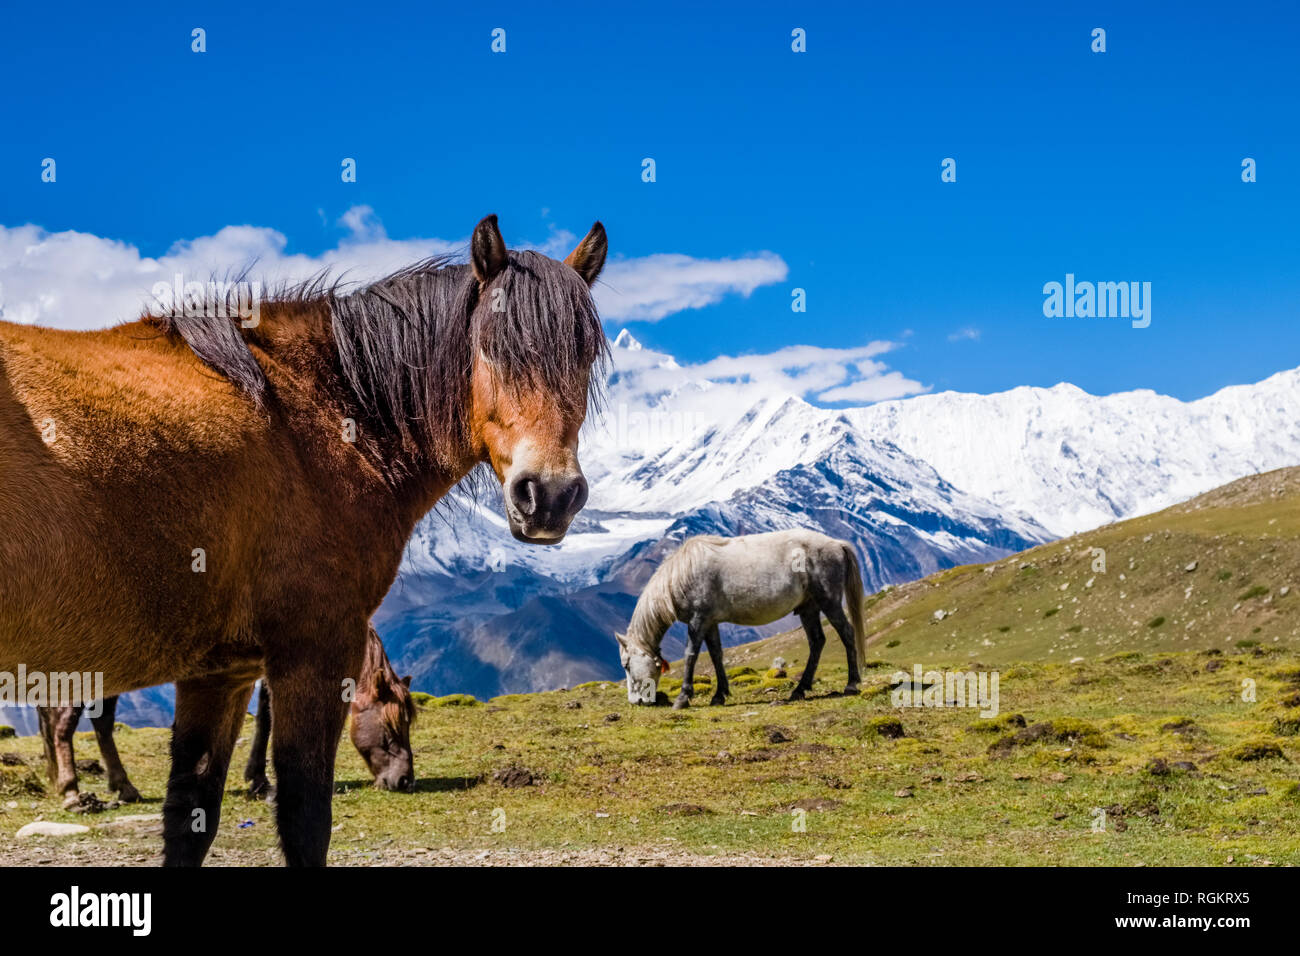 Un brun et un cheval blanc sont le pâturage dans la région du Lac de glace, les sommets enneigés de l'Annapurna dans la distance Banque D'Images